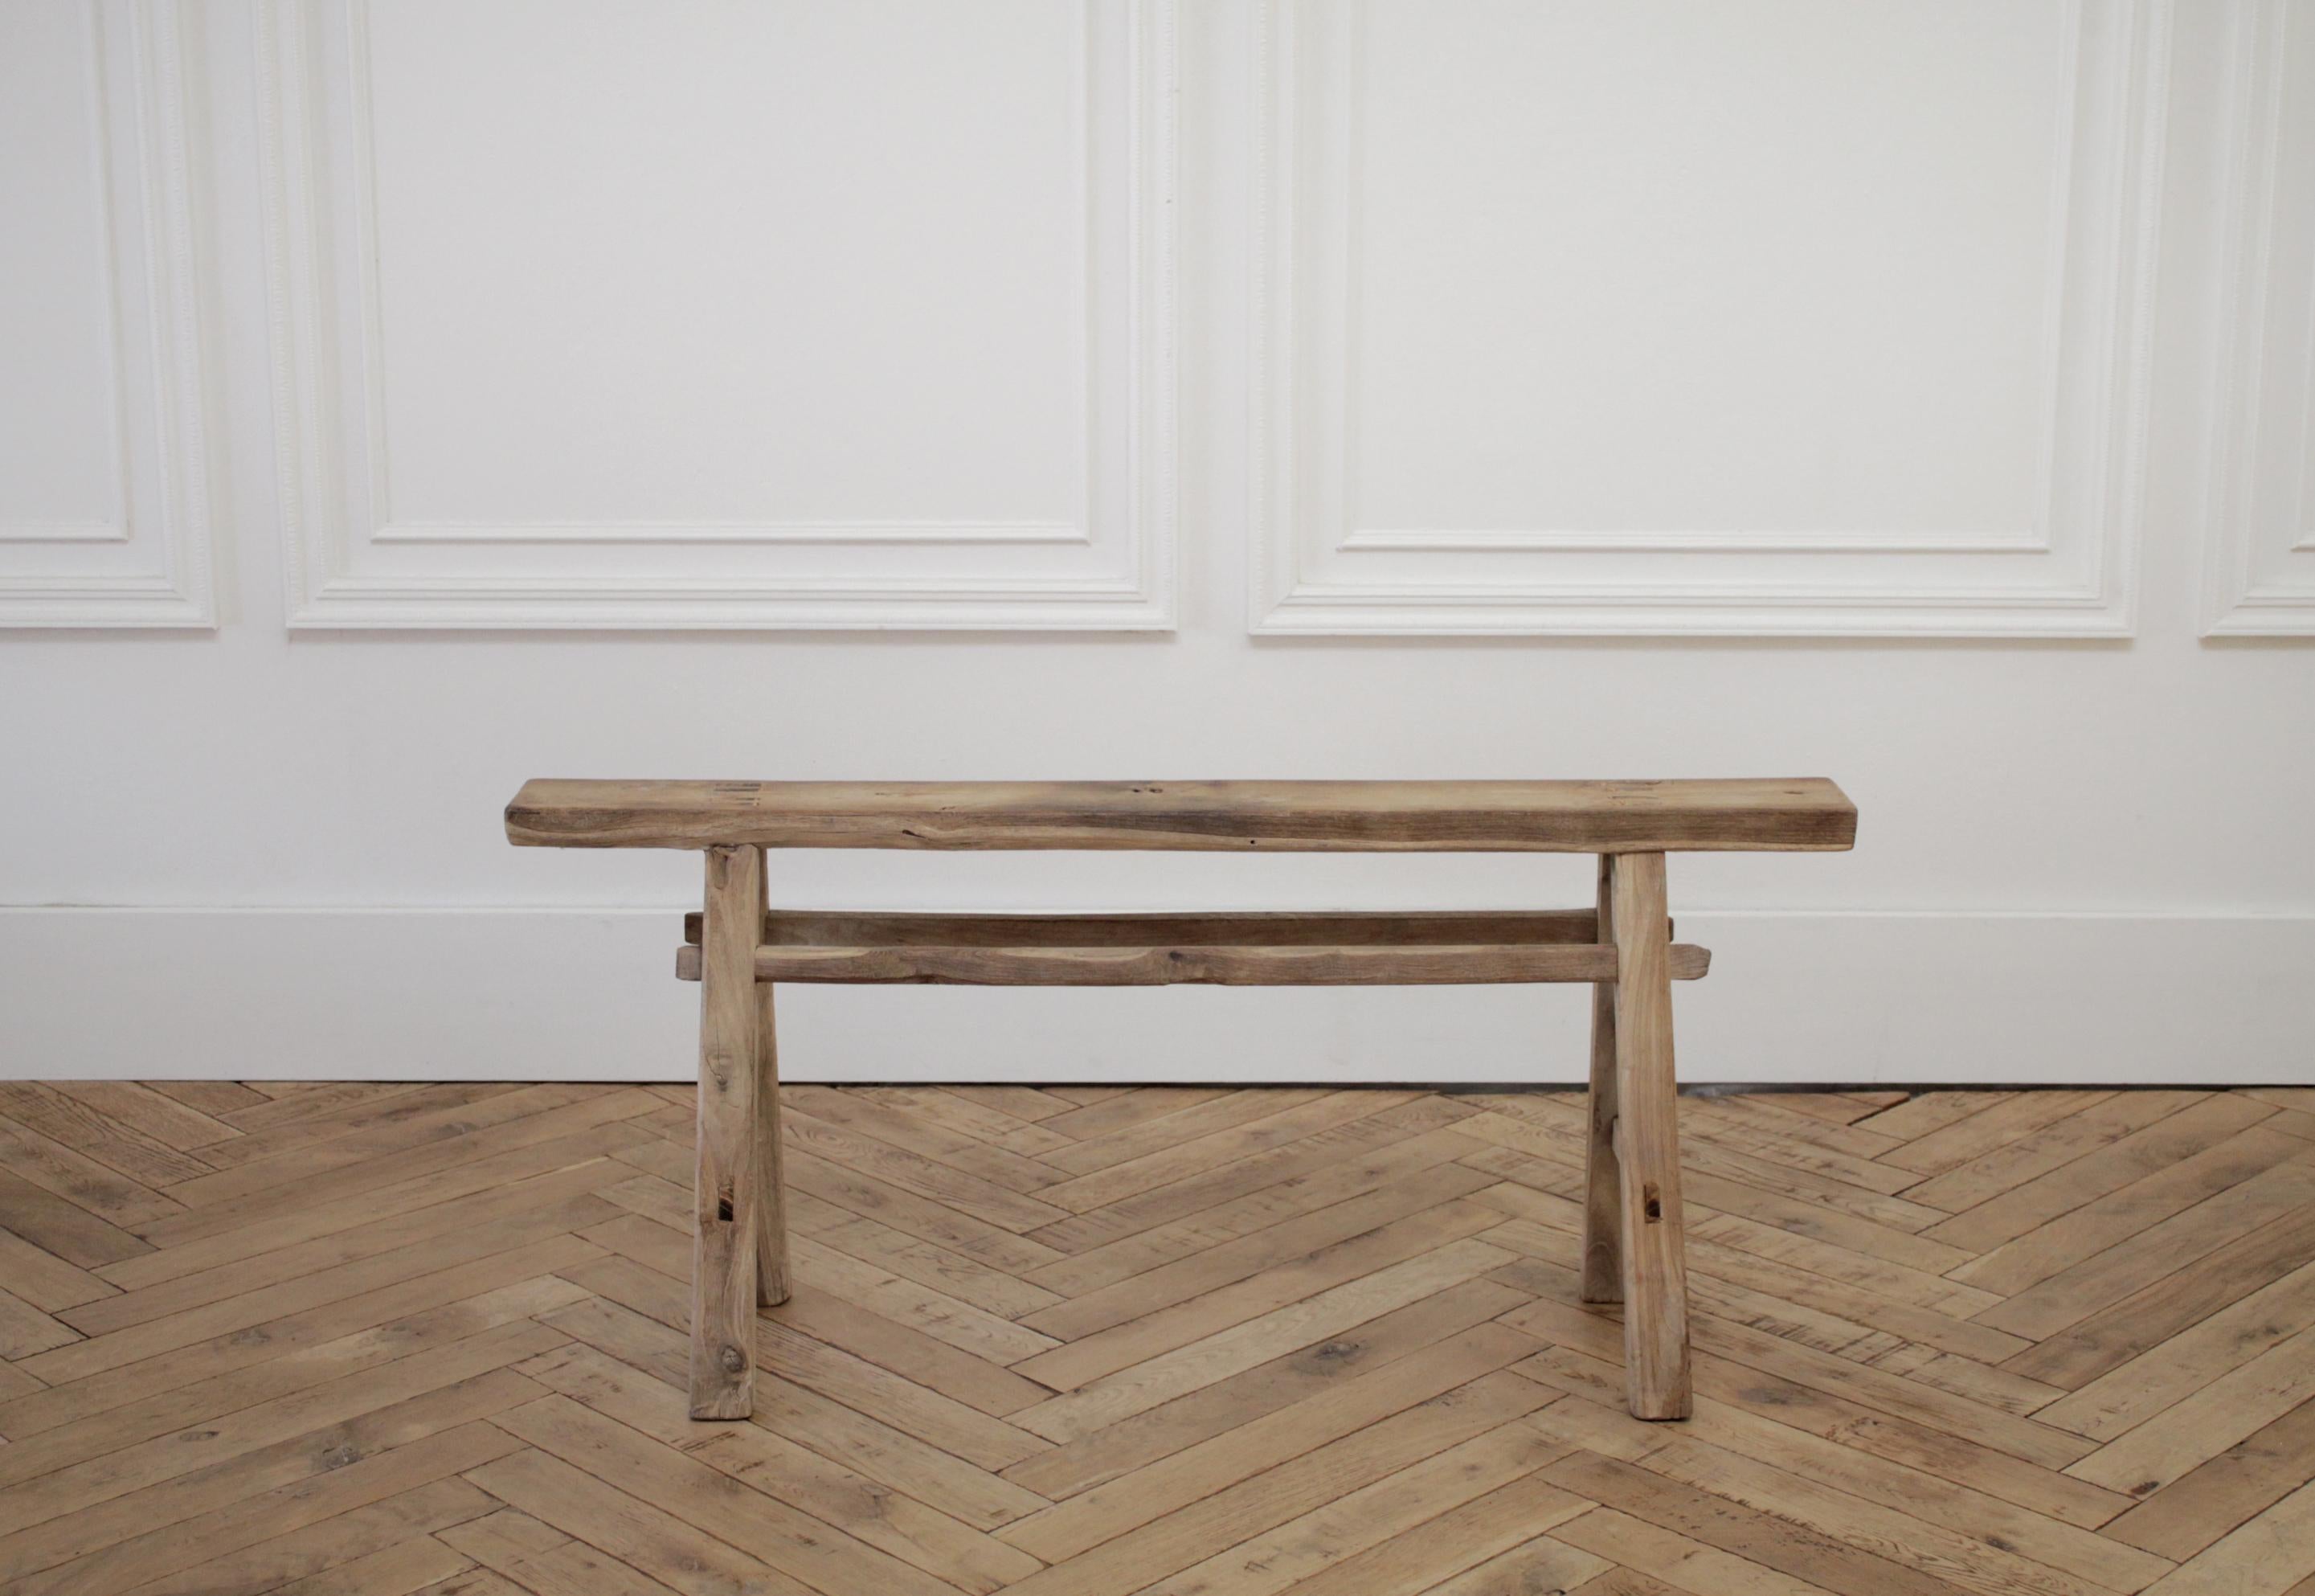 Vintage elm wood bench 
Size: 43.25